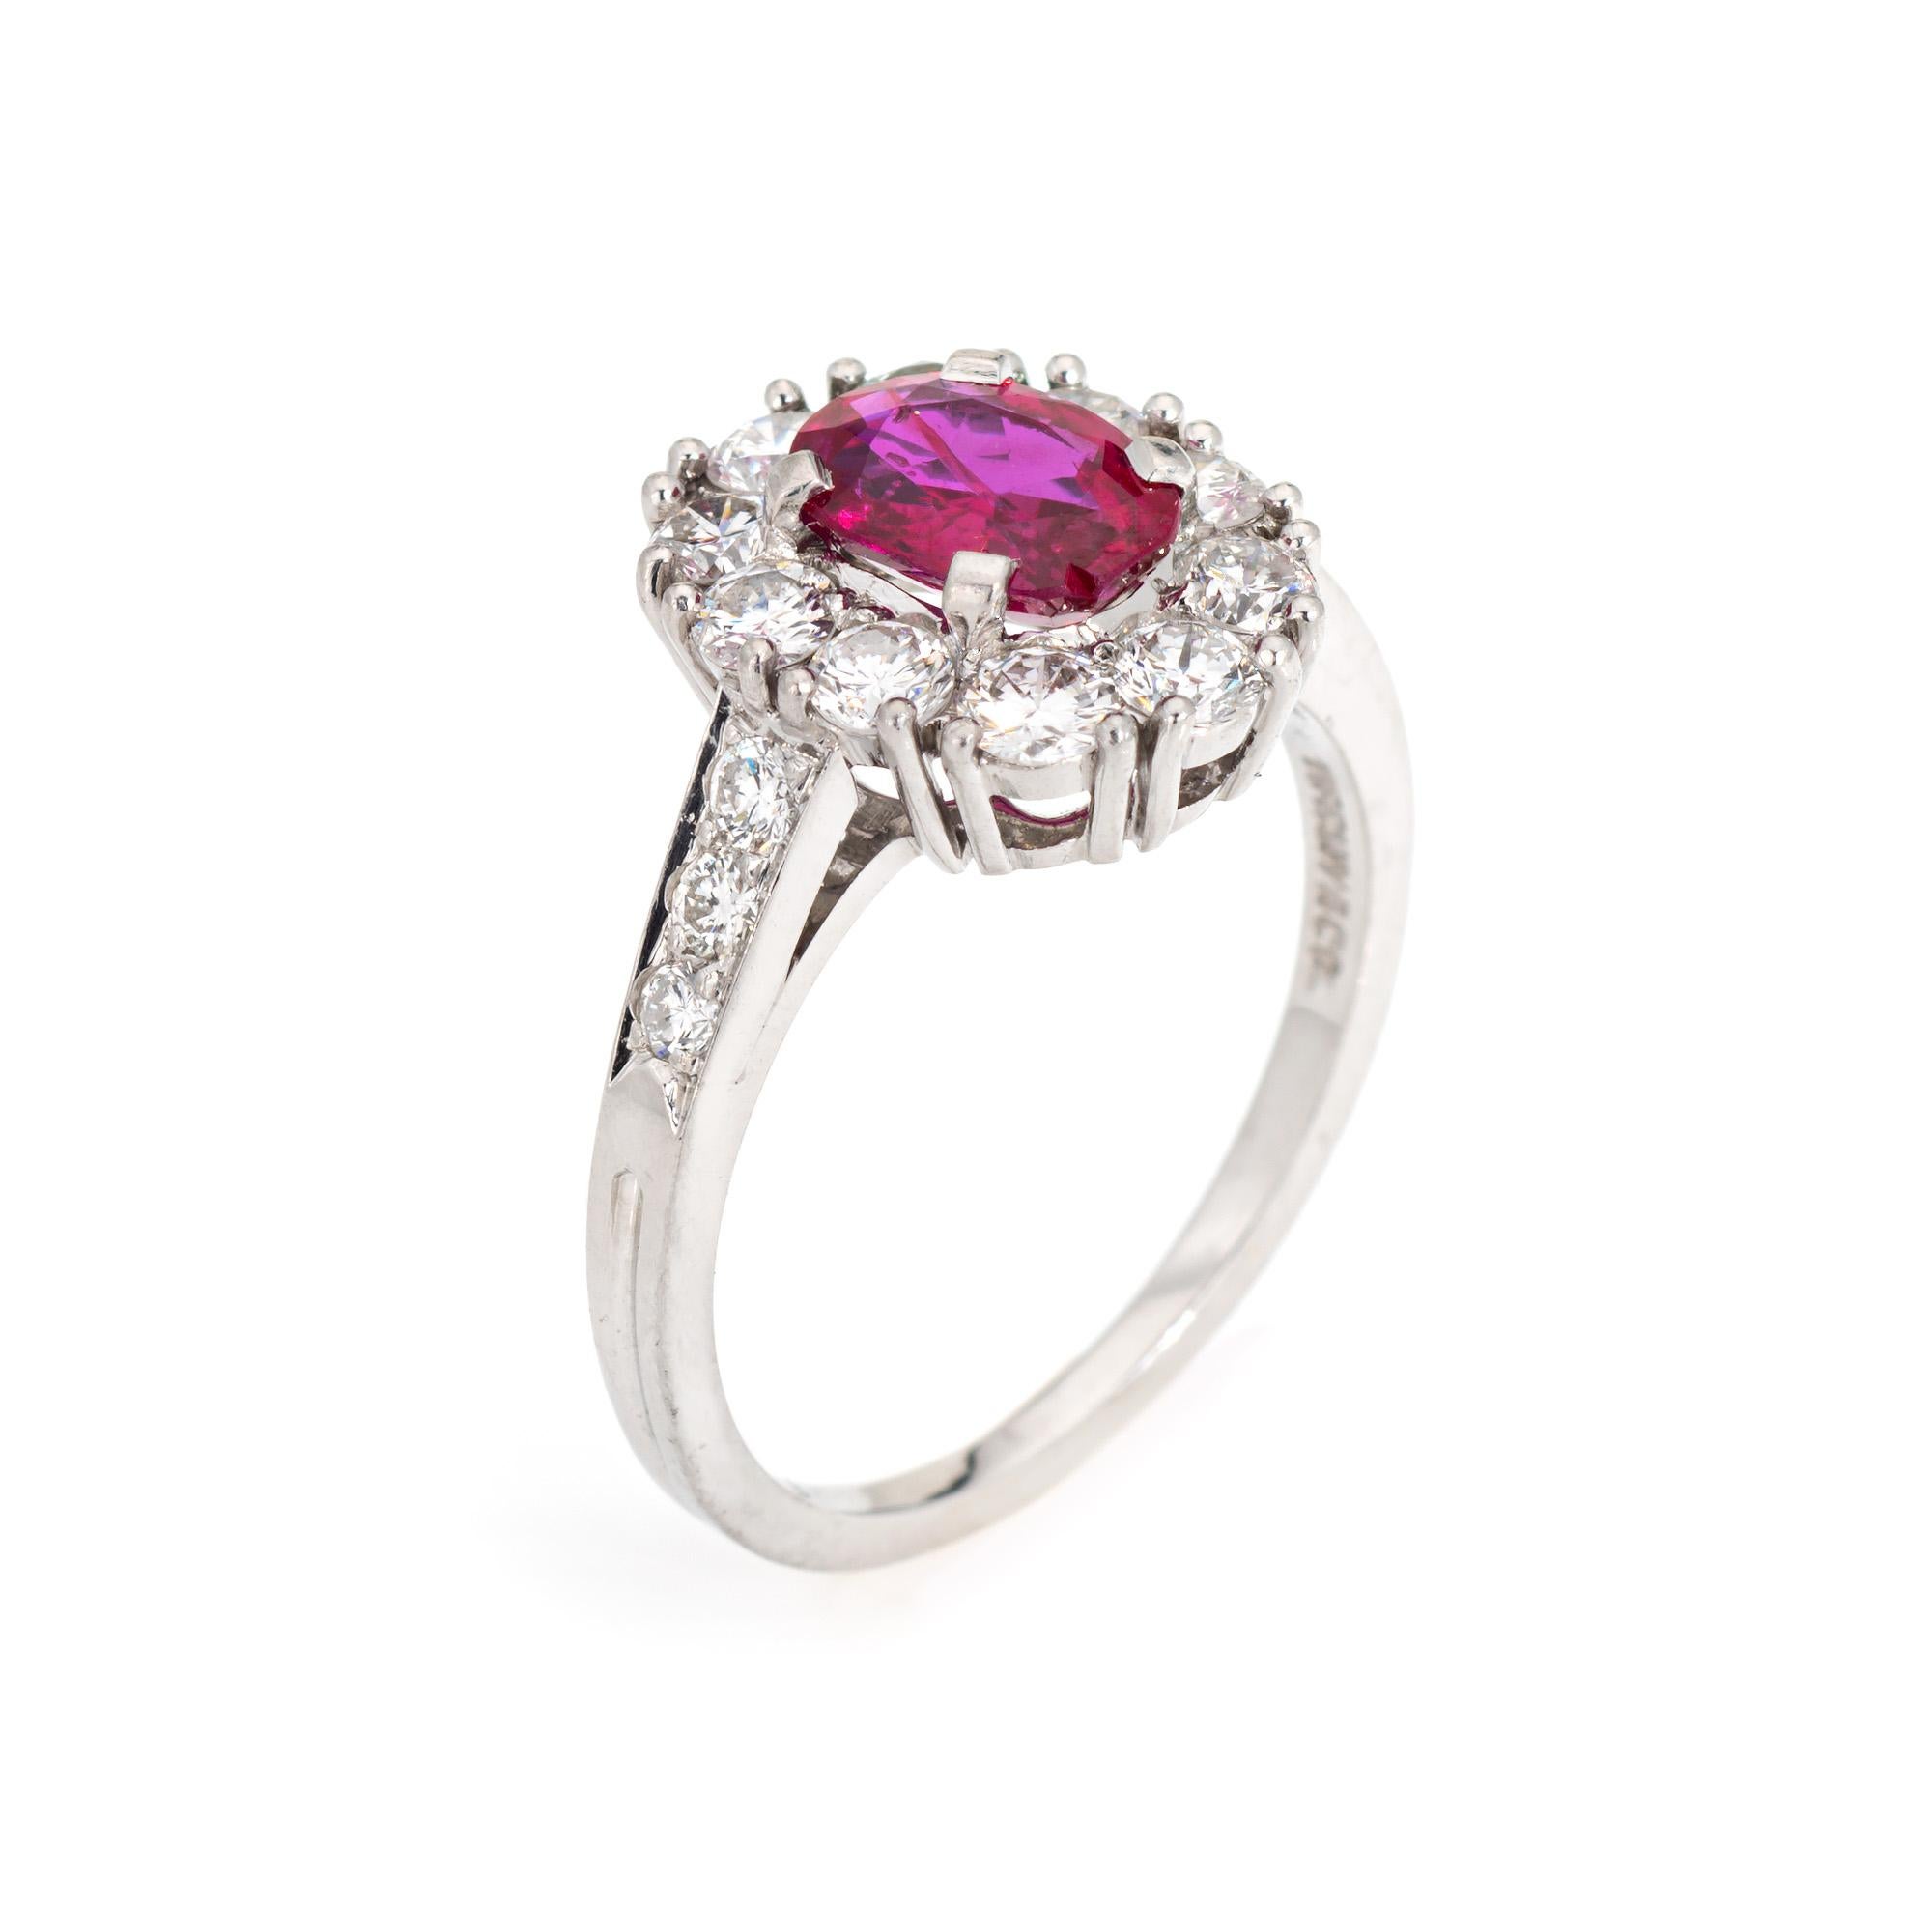 Bague vintage Tiffany & CIRCA avec rubis et diamants en platine 900 (circa 1960s).  

Le rubis naturel ovale de taille mixte mesure 7,1 x 5,4 x 3,0 mm (estimé à 1 carat). La couleur et les inclusions sont typiques des rubis de Birmanie (Myanmar). Il